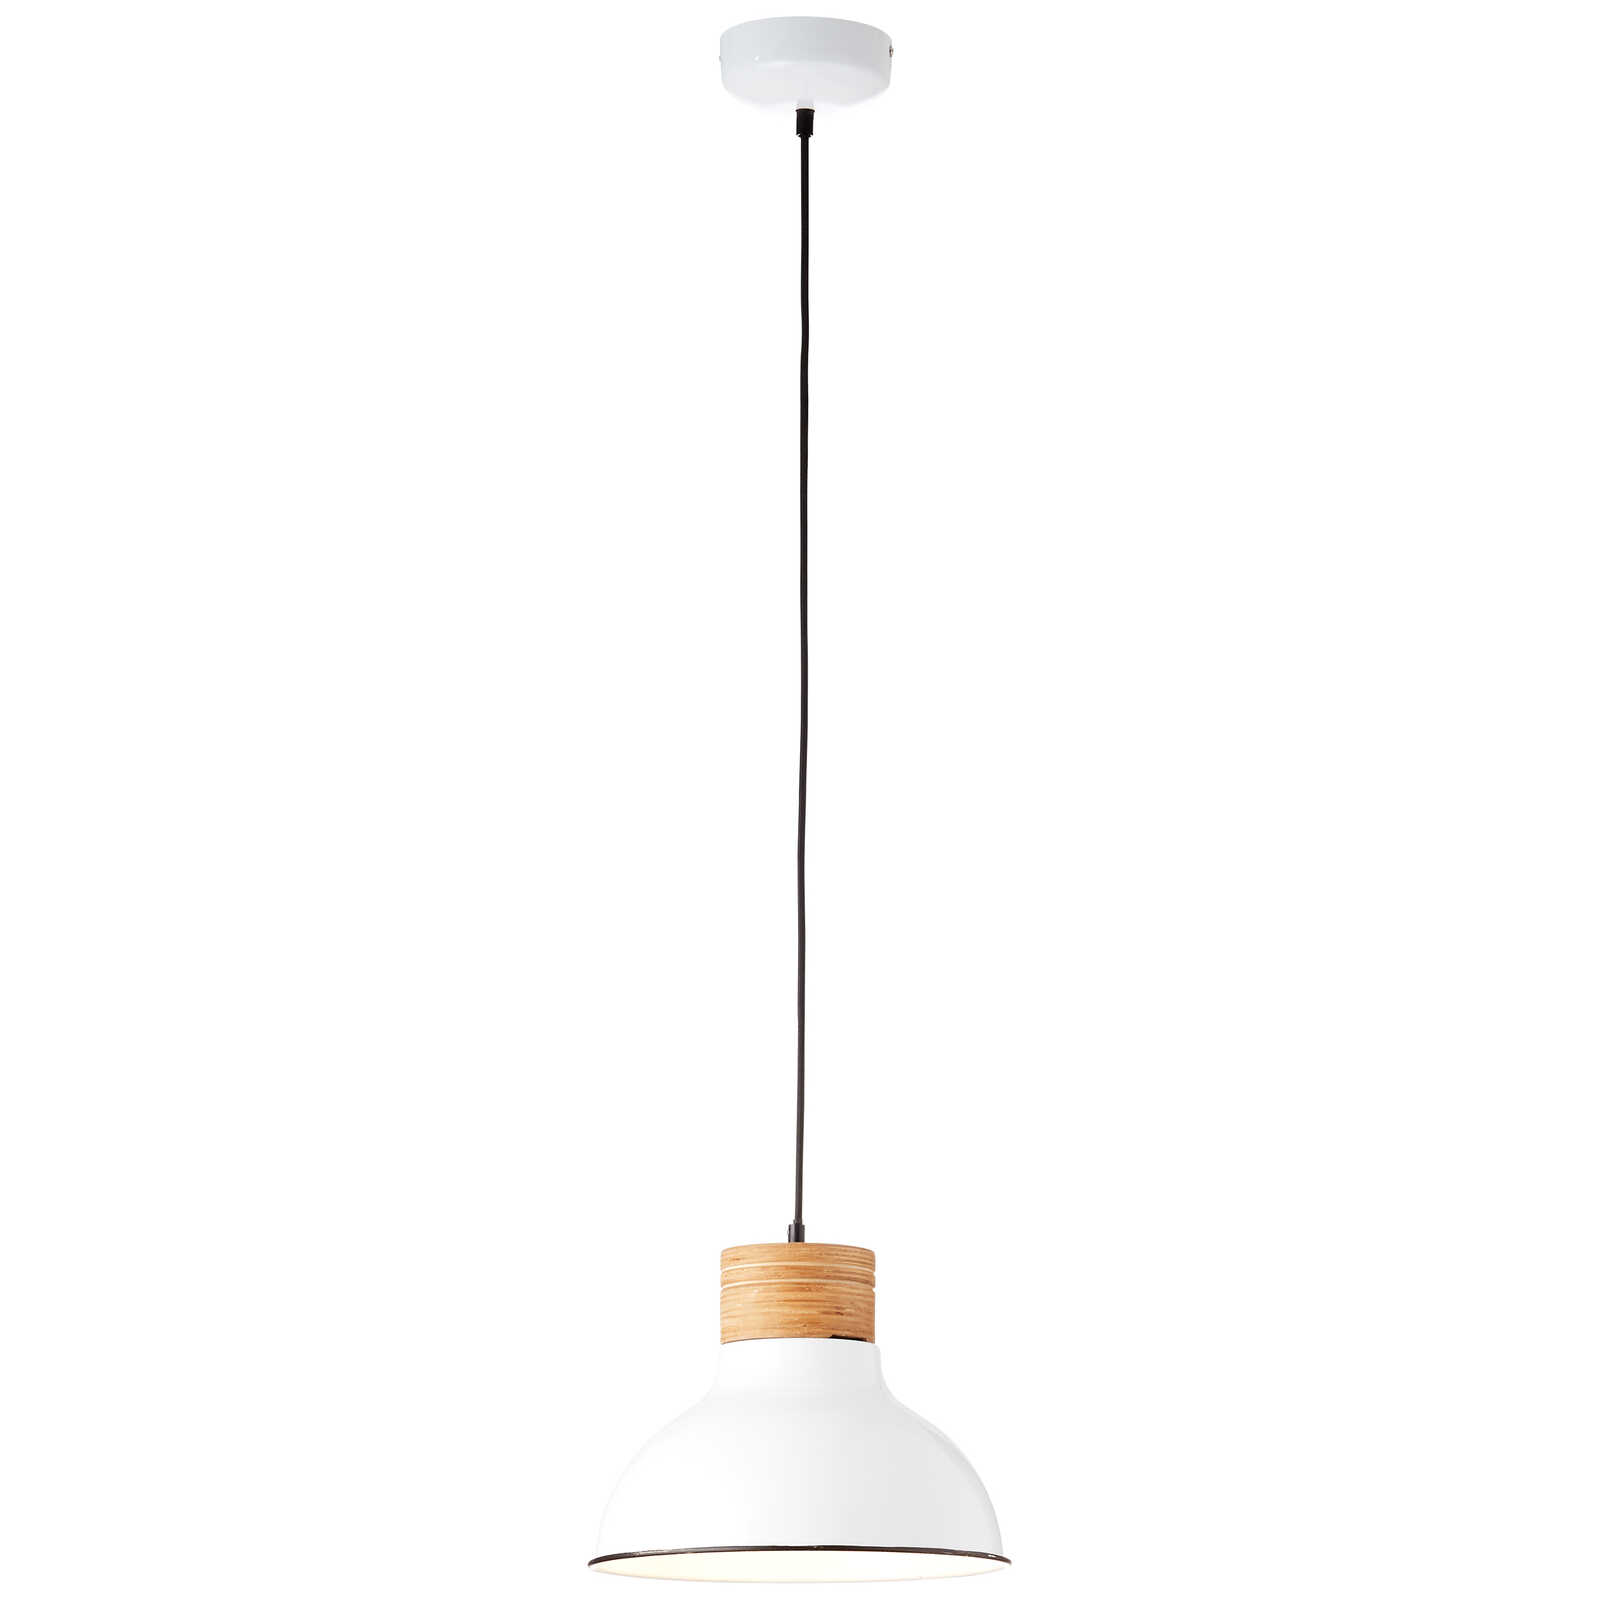             Lámpara colgante de madera - Markus - Beige
        